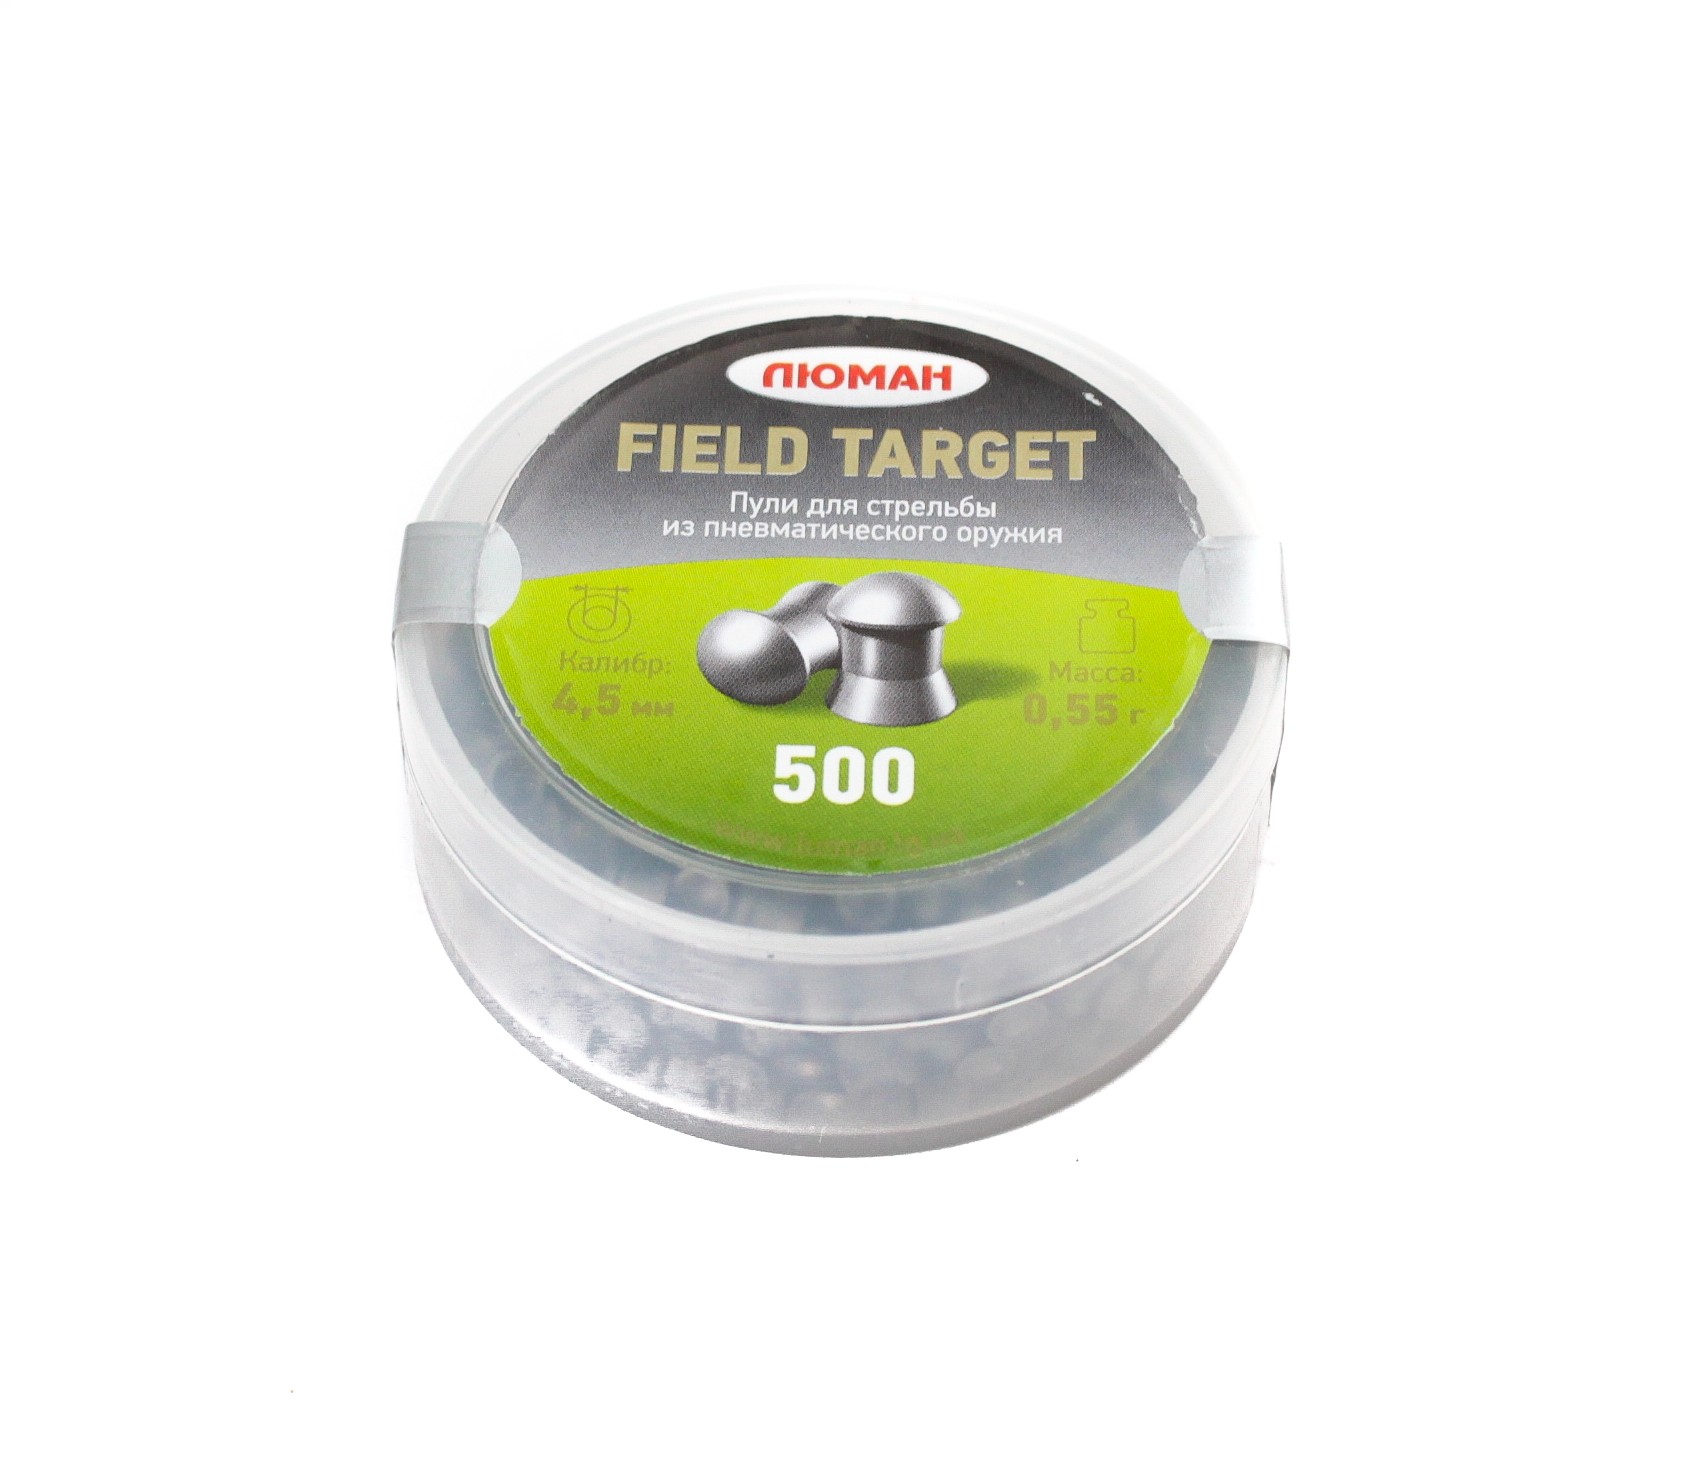 Пульки Люман Field Target 0,55 гр 500 шт